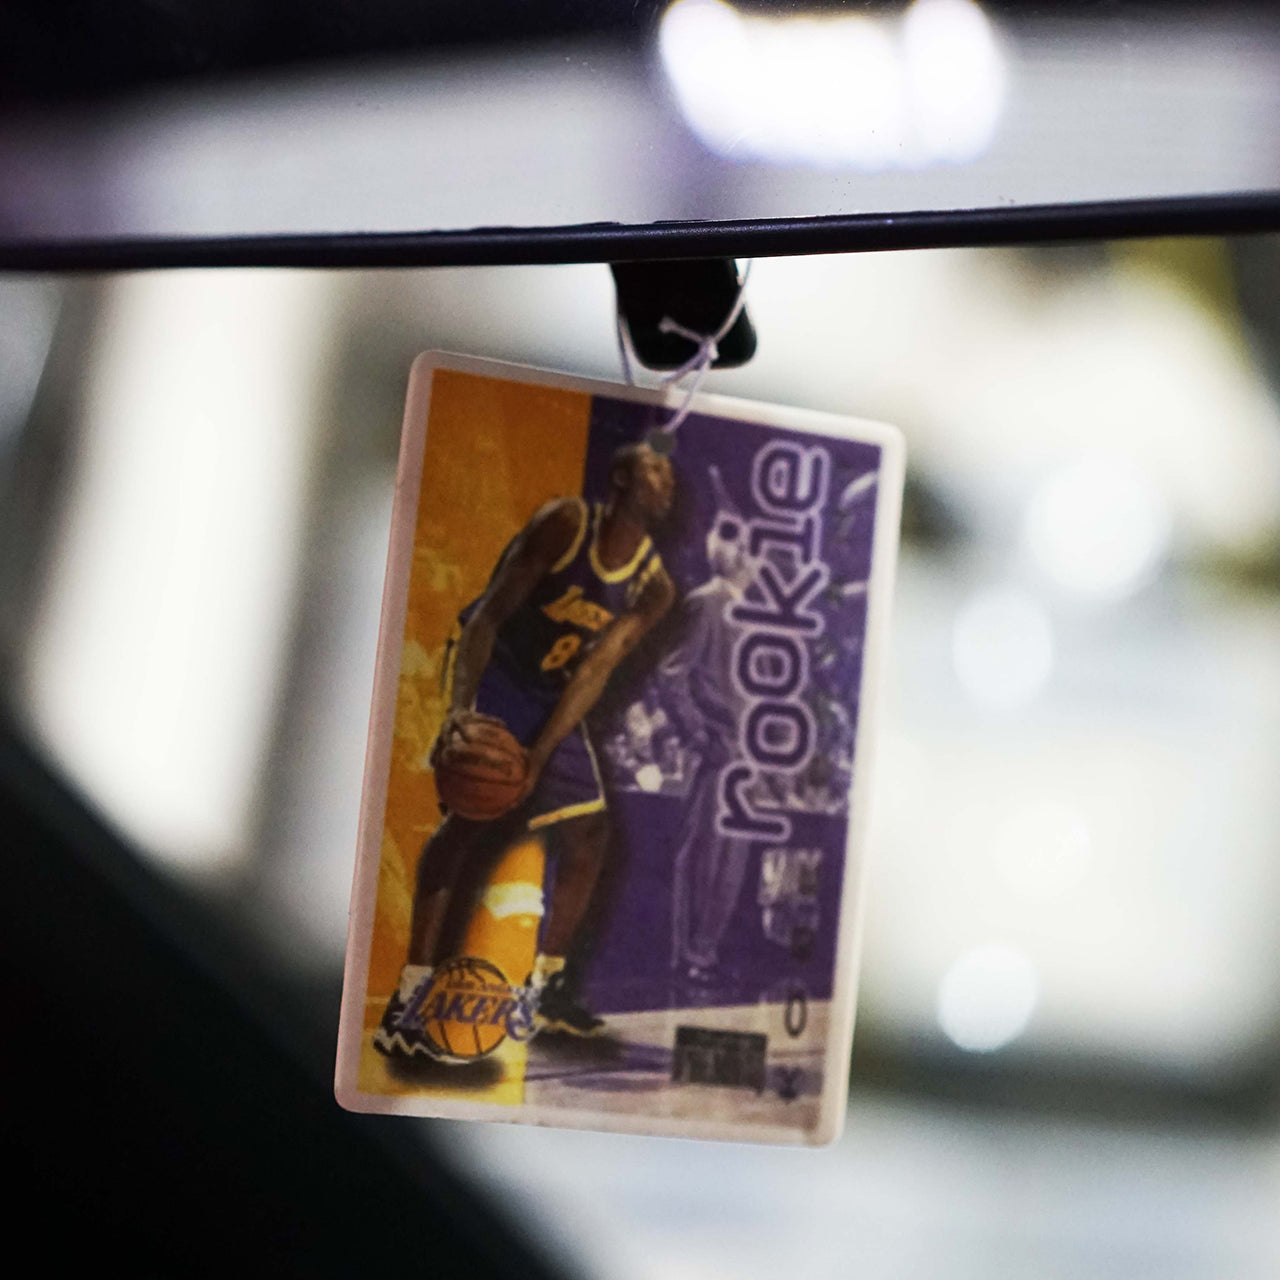 Kobe Basketball Card Air Freshener